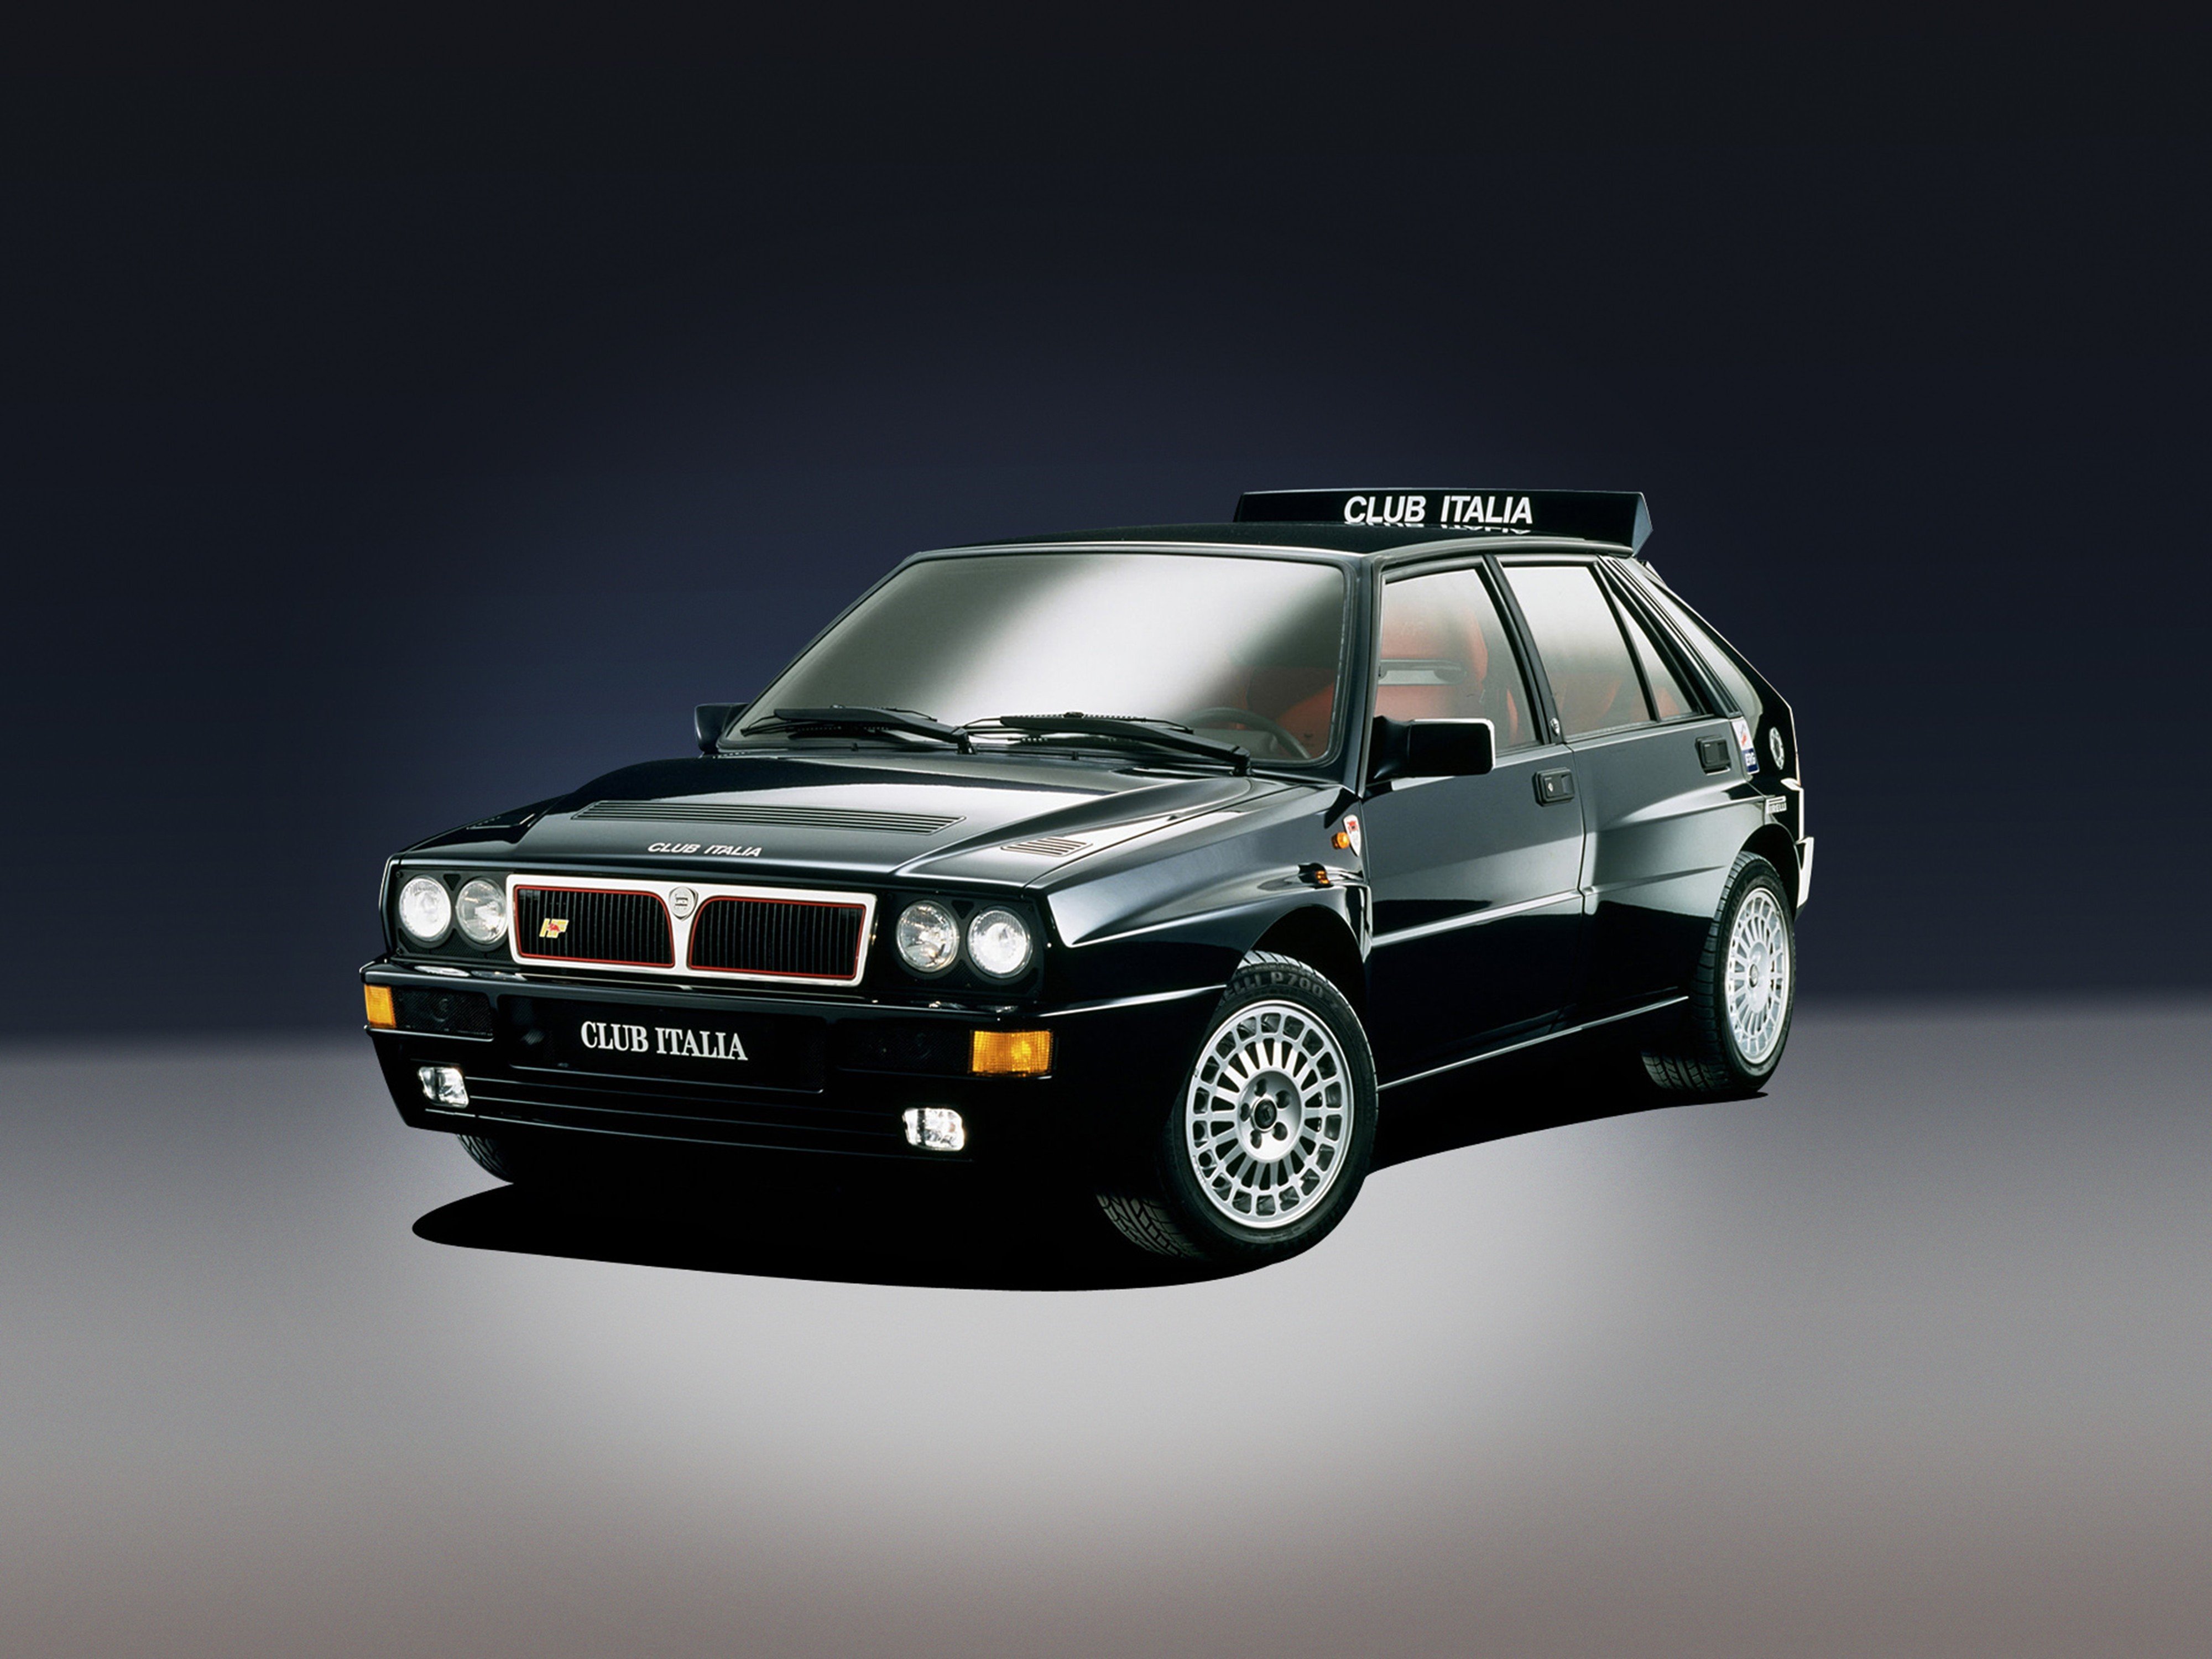 1992, Lancia, Delta hf, Integrale, Evoluzione, Car, Italy, 4000x3000 Wallpaper